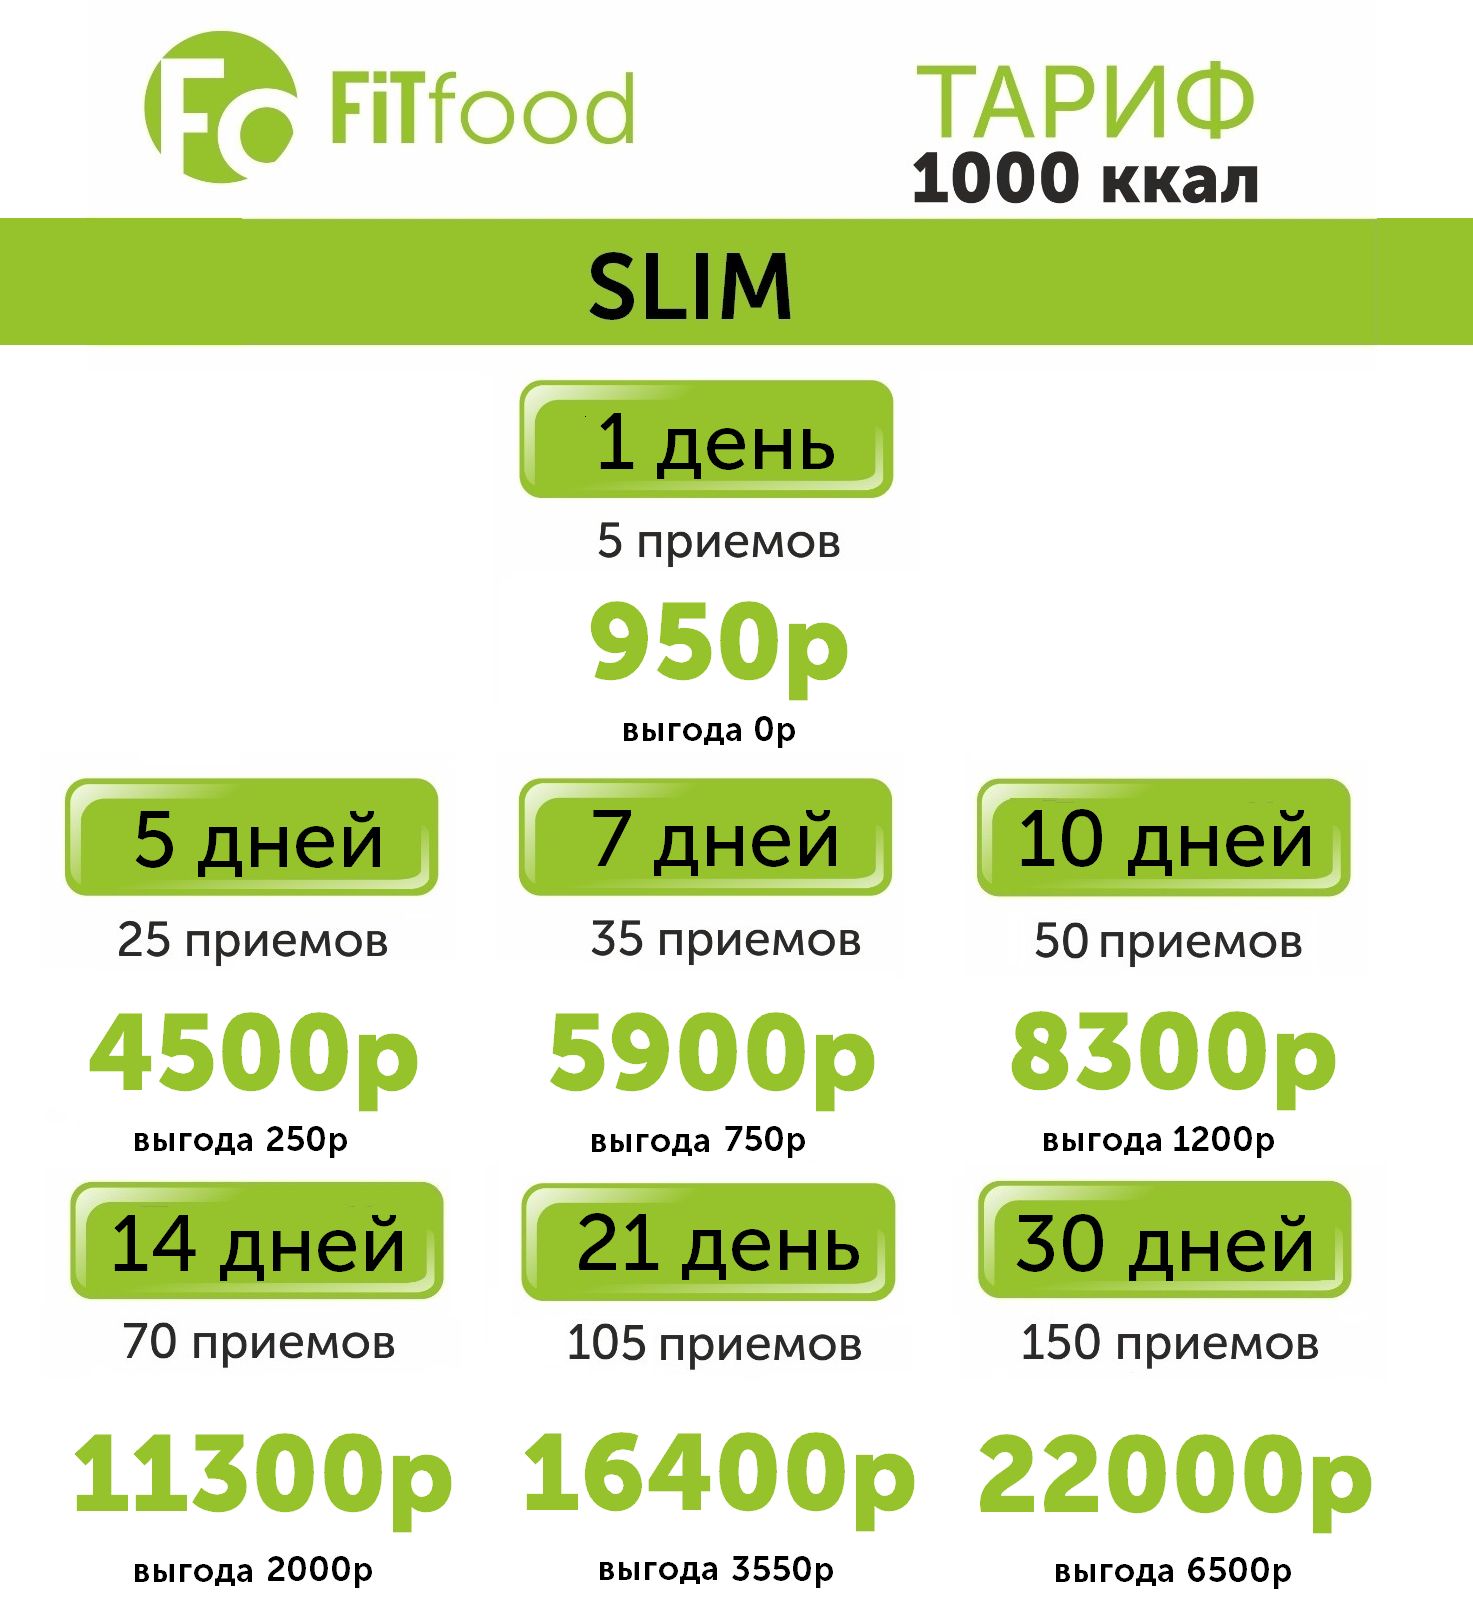 Питание на 1000 калорий